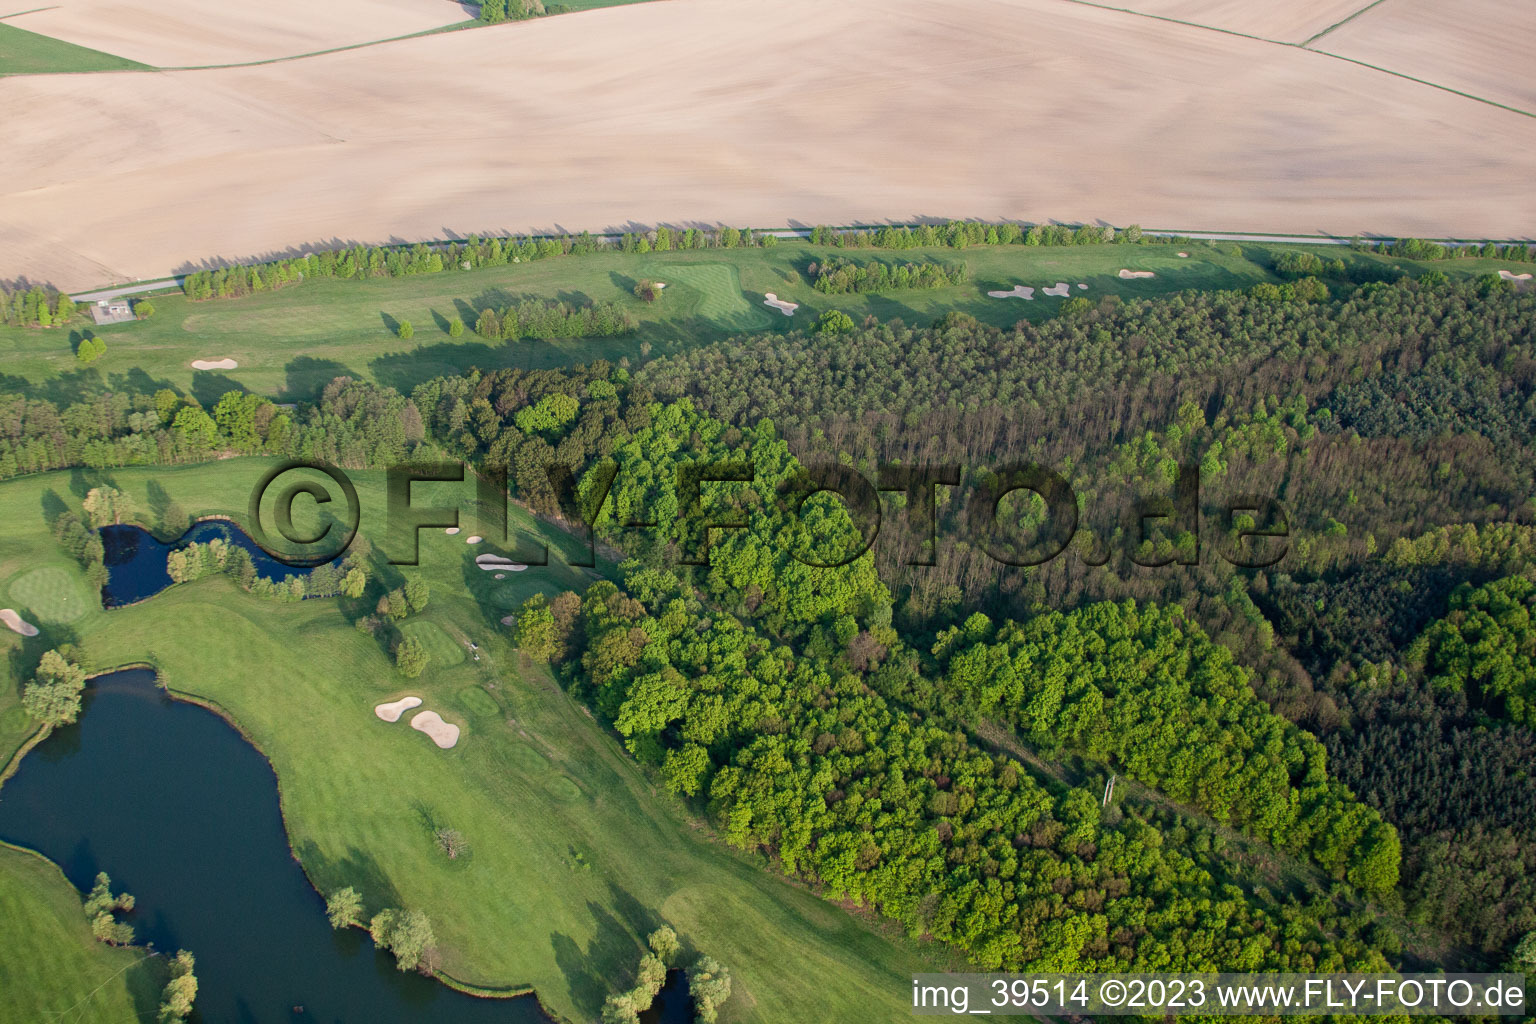 Club de golf Soufflenheim Baden-Baden à Soufflenheim dans le département Bas Rhin, France d'un drone